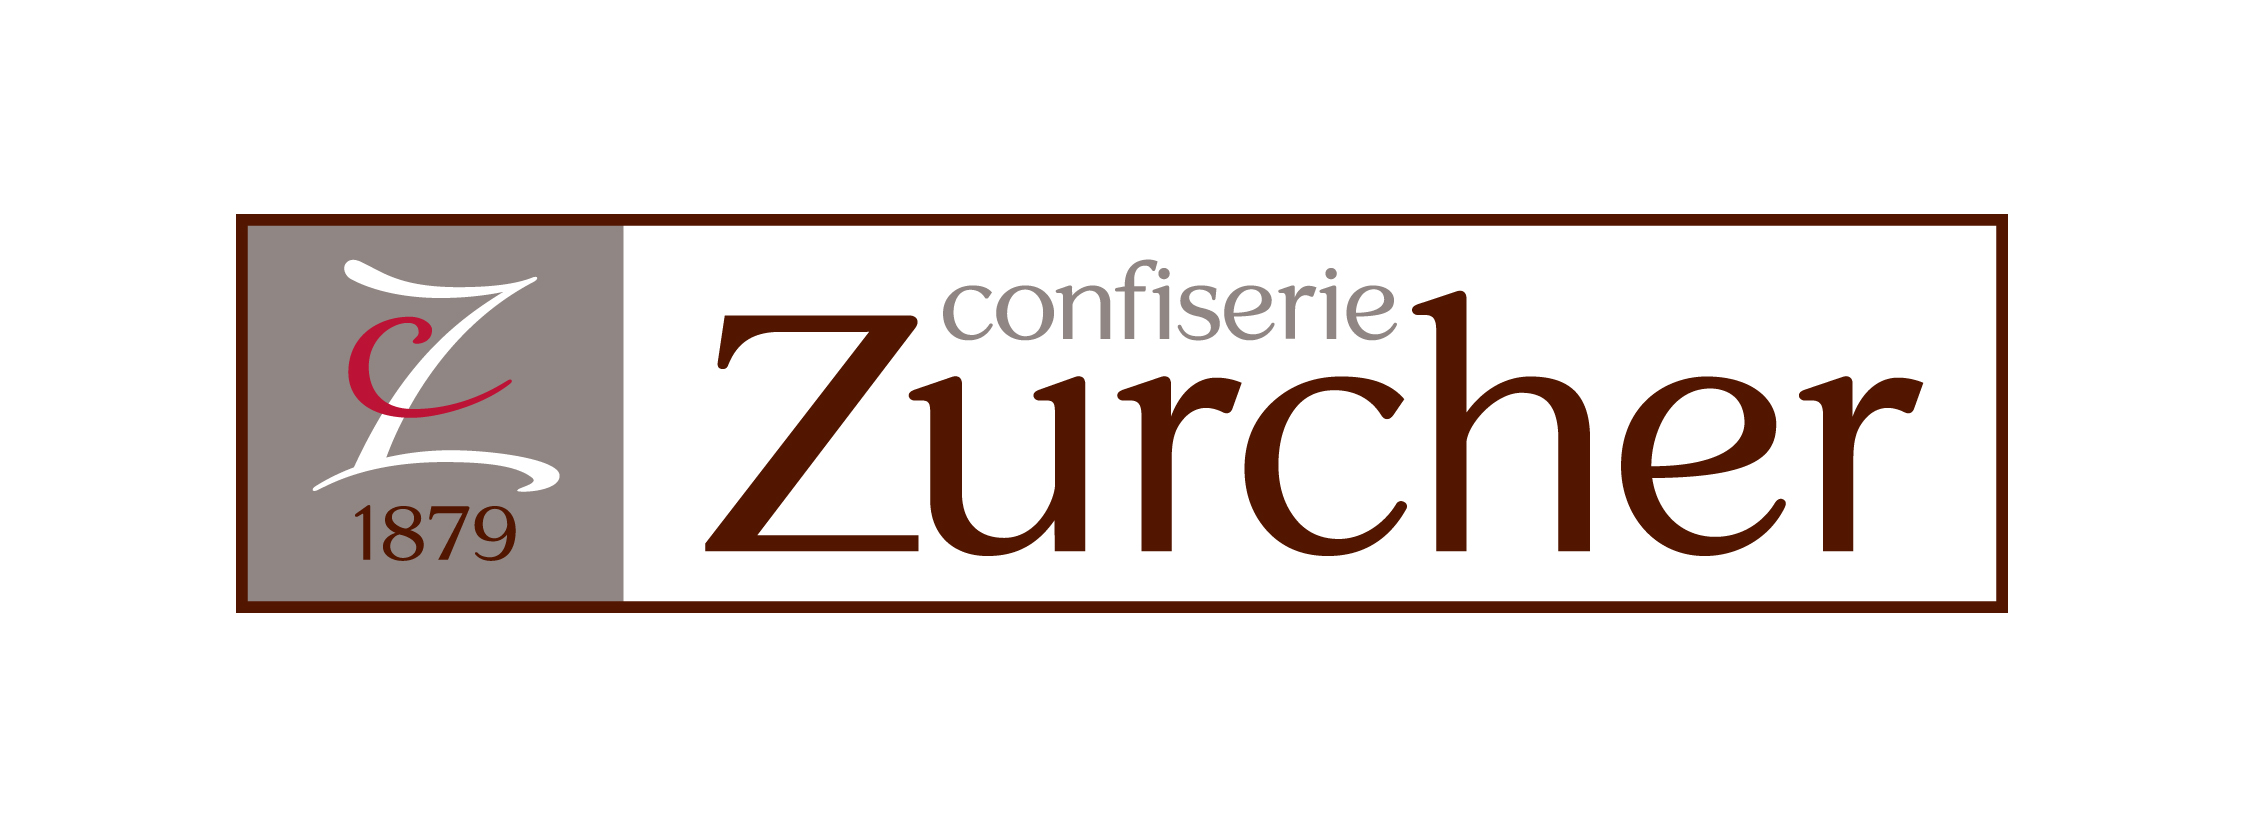 the Confiserie Zurcher